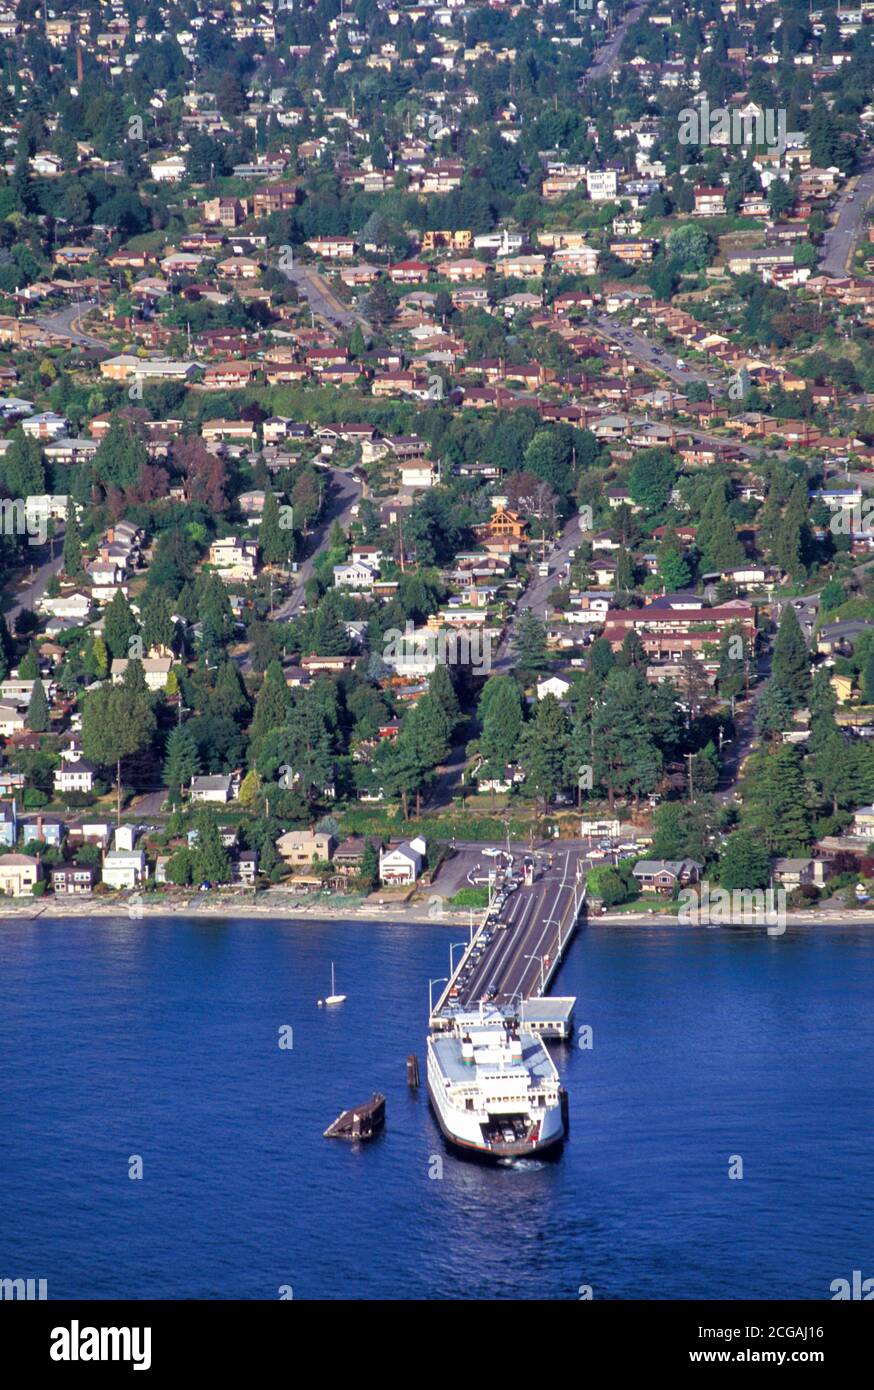 Washington State Ferry arrives at Fauntleroy ferry boat dock, Seattle, Washington Stock Photo